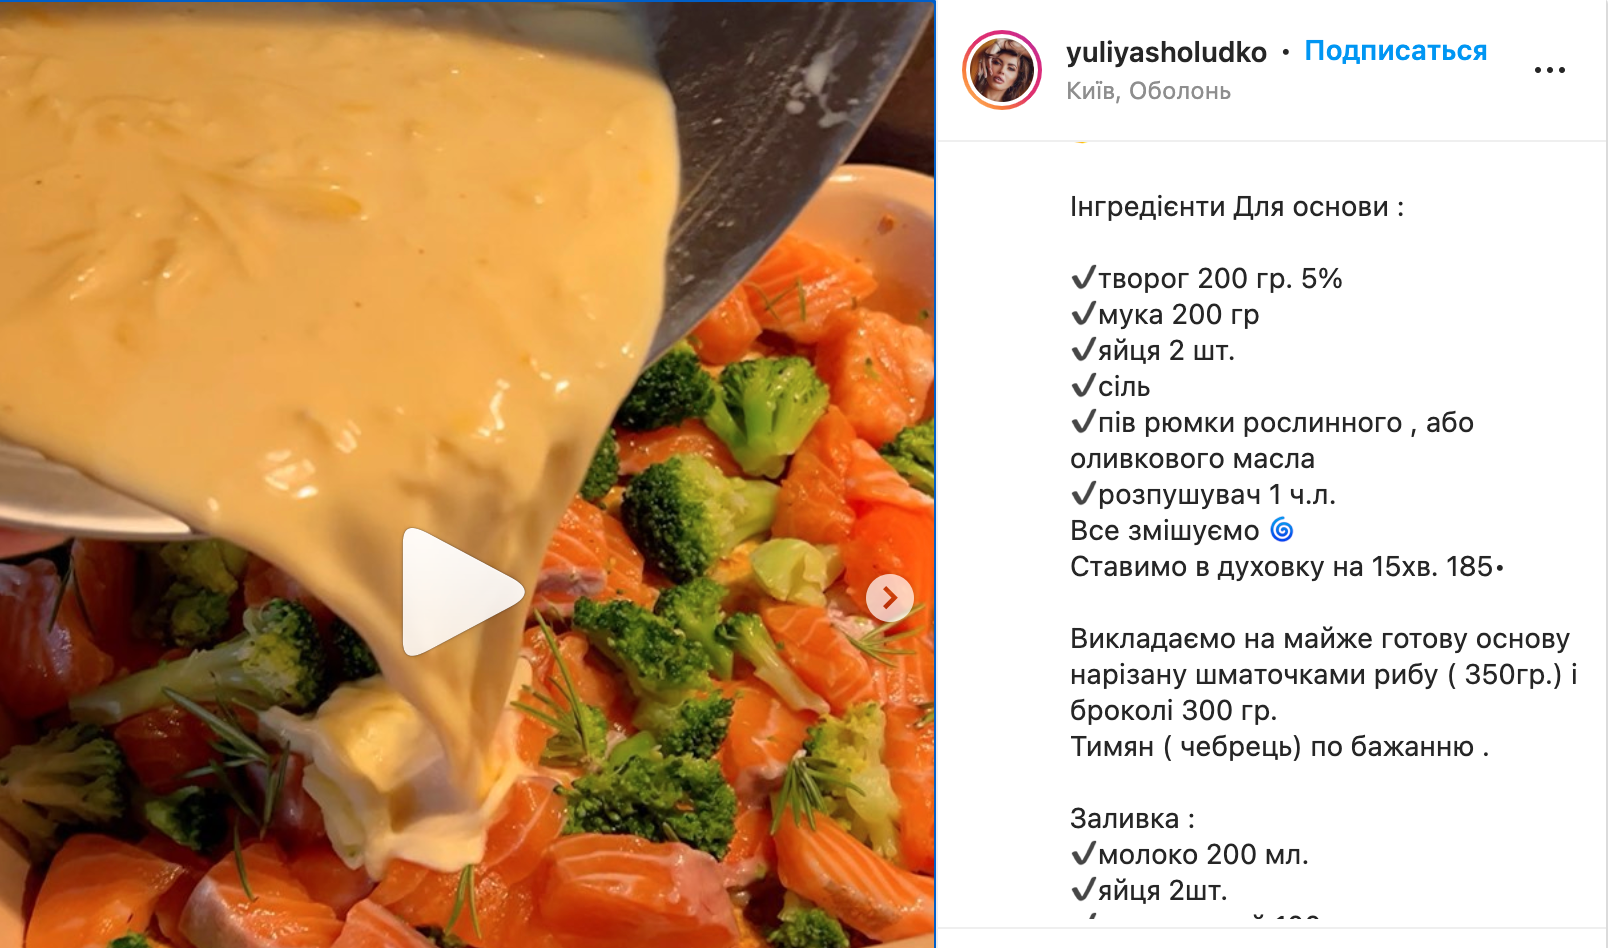 Fish and broccoli quiche recipe